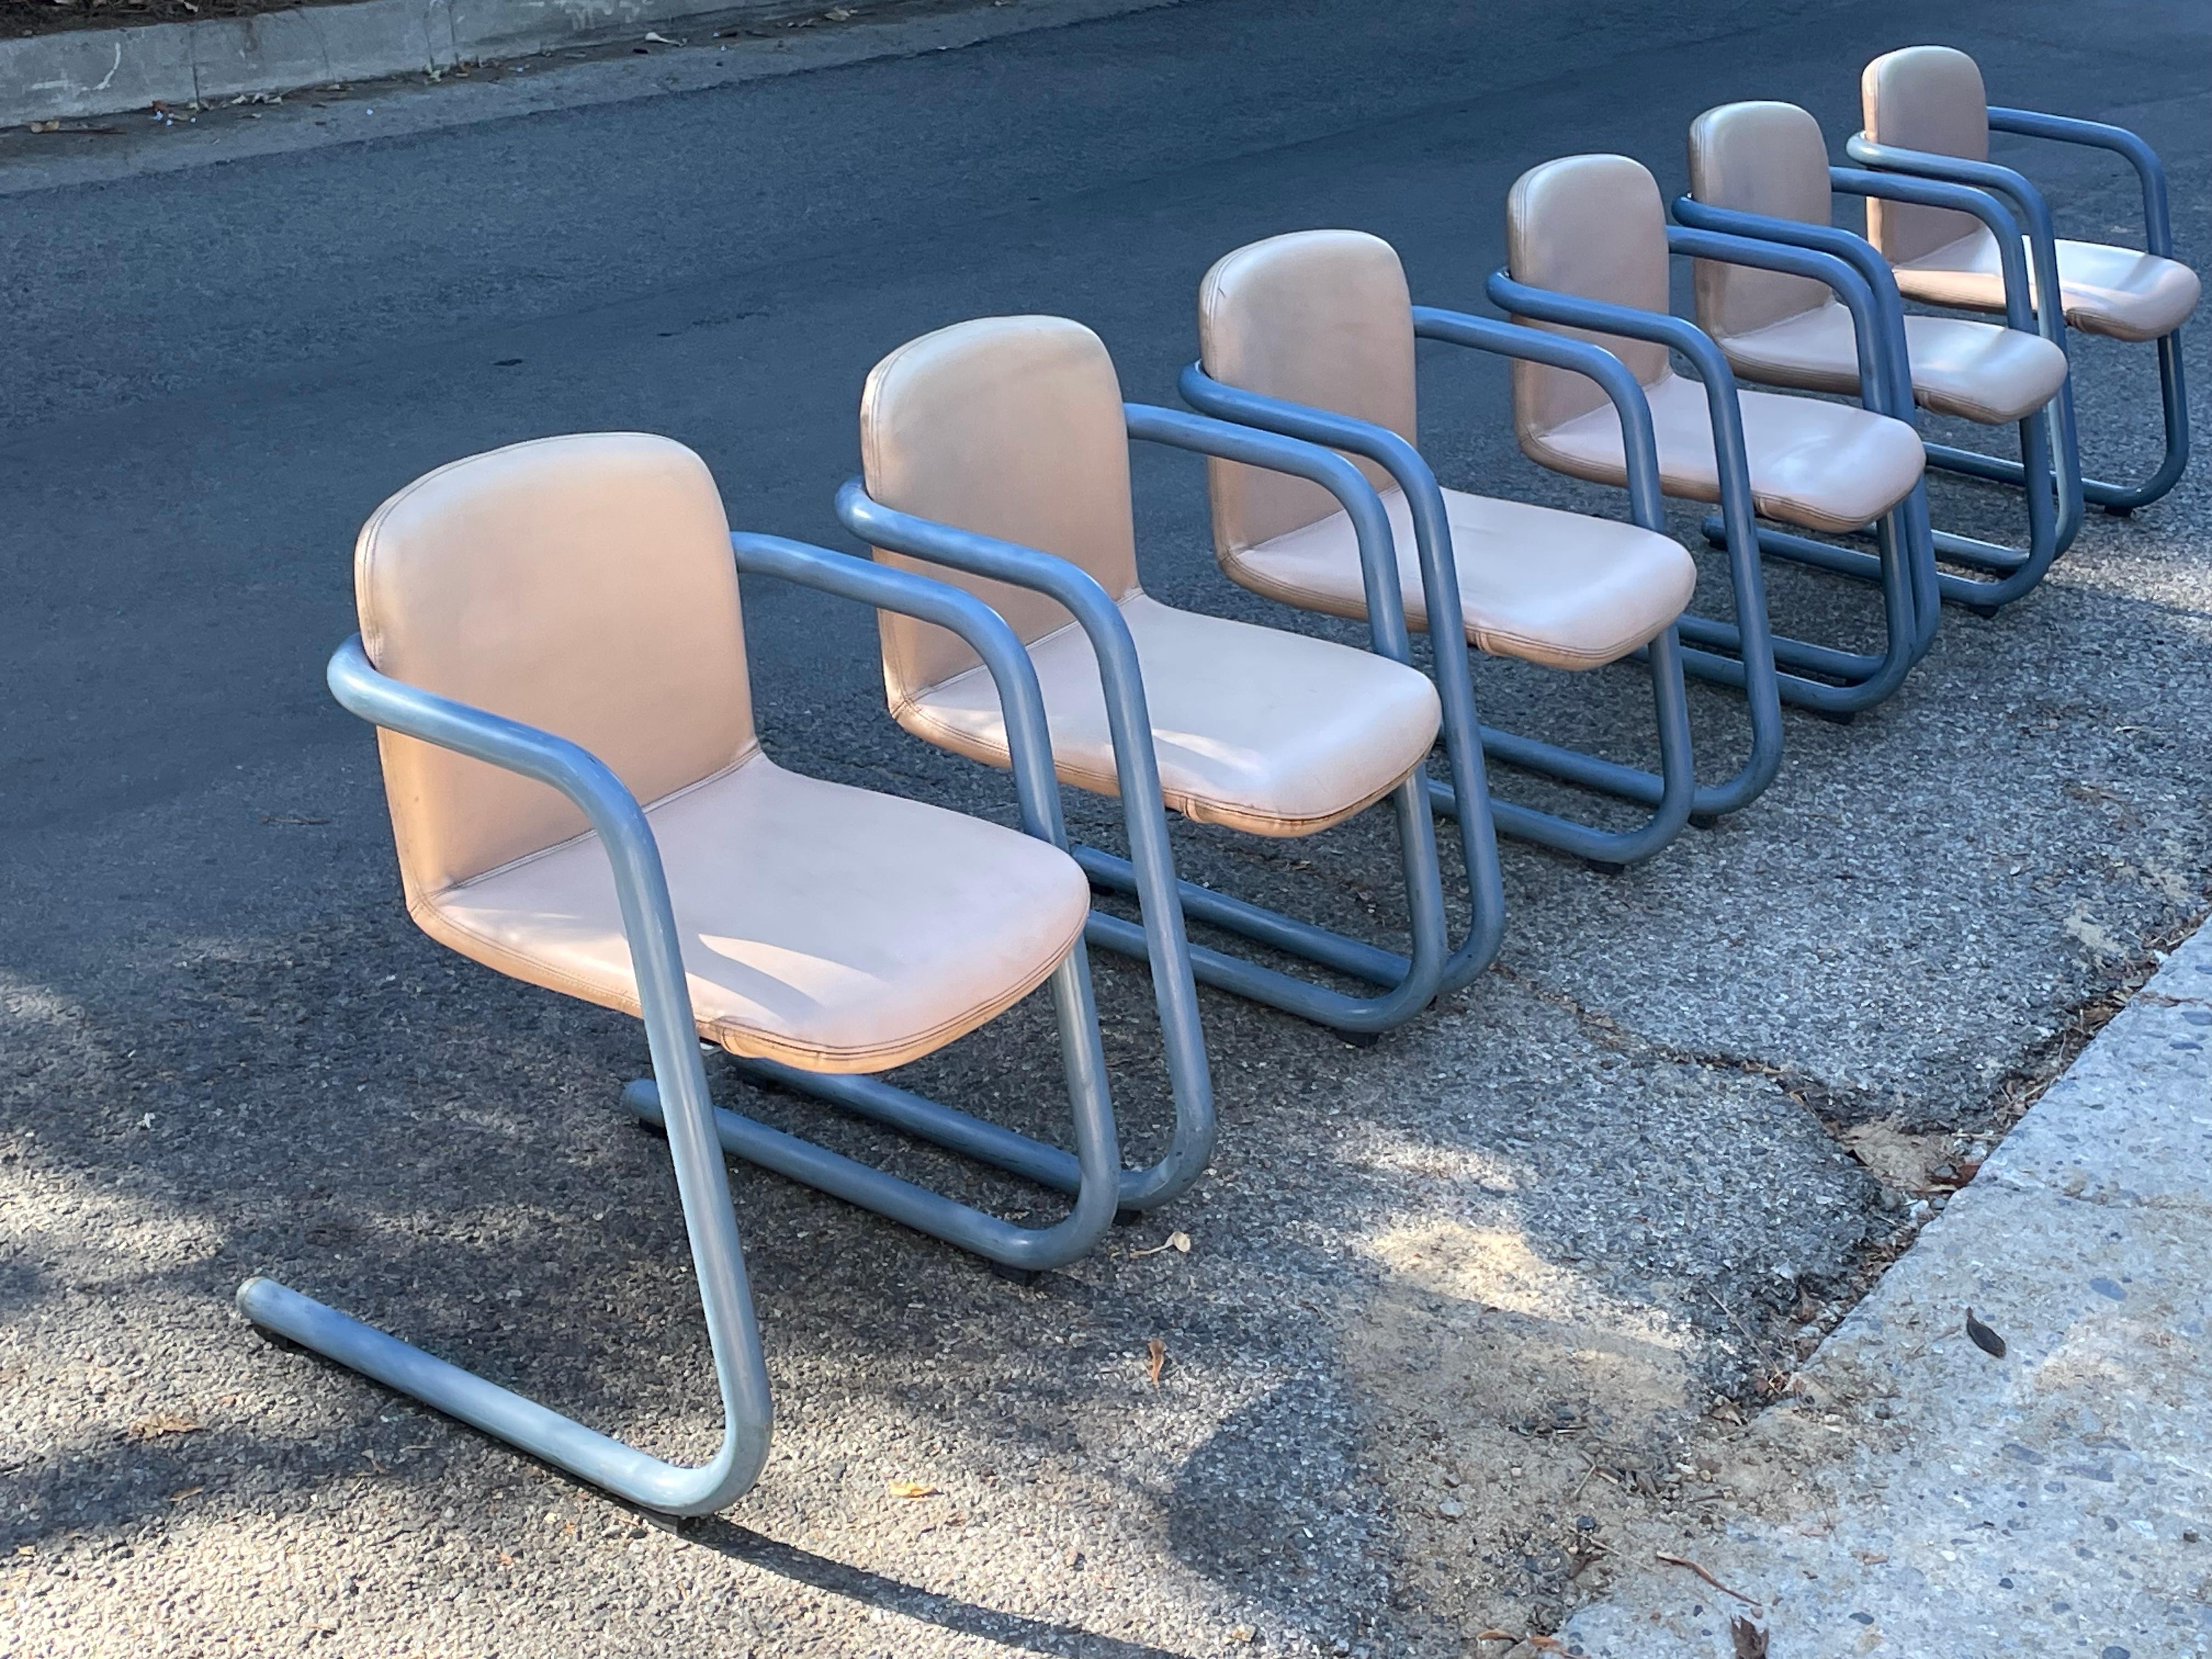 Satz von 6 Vintage Kinetics Blue & Tan 100/300 Stühlen, ca. 1970er Jahre in gutem Zustand. Entworfen von Philip Salmon und Hugh Hamilton für Kinetics.

Wirklich cool. Der Preis gilt für den Satz von sechs Stück.

Sehr guter Vintage-Zustand mit